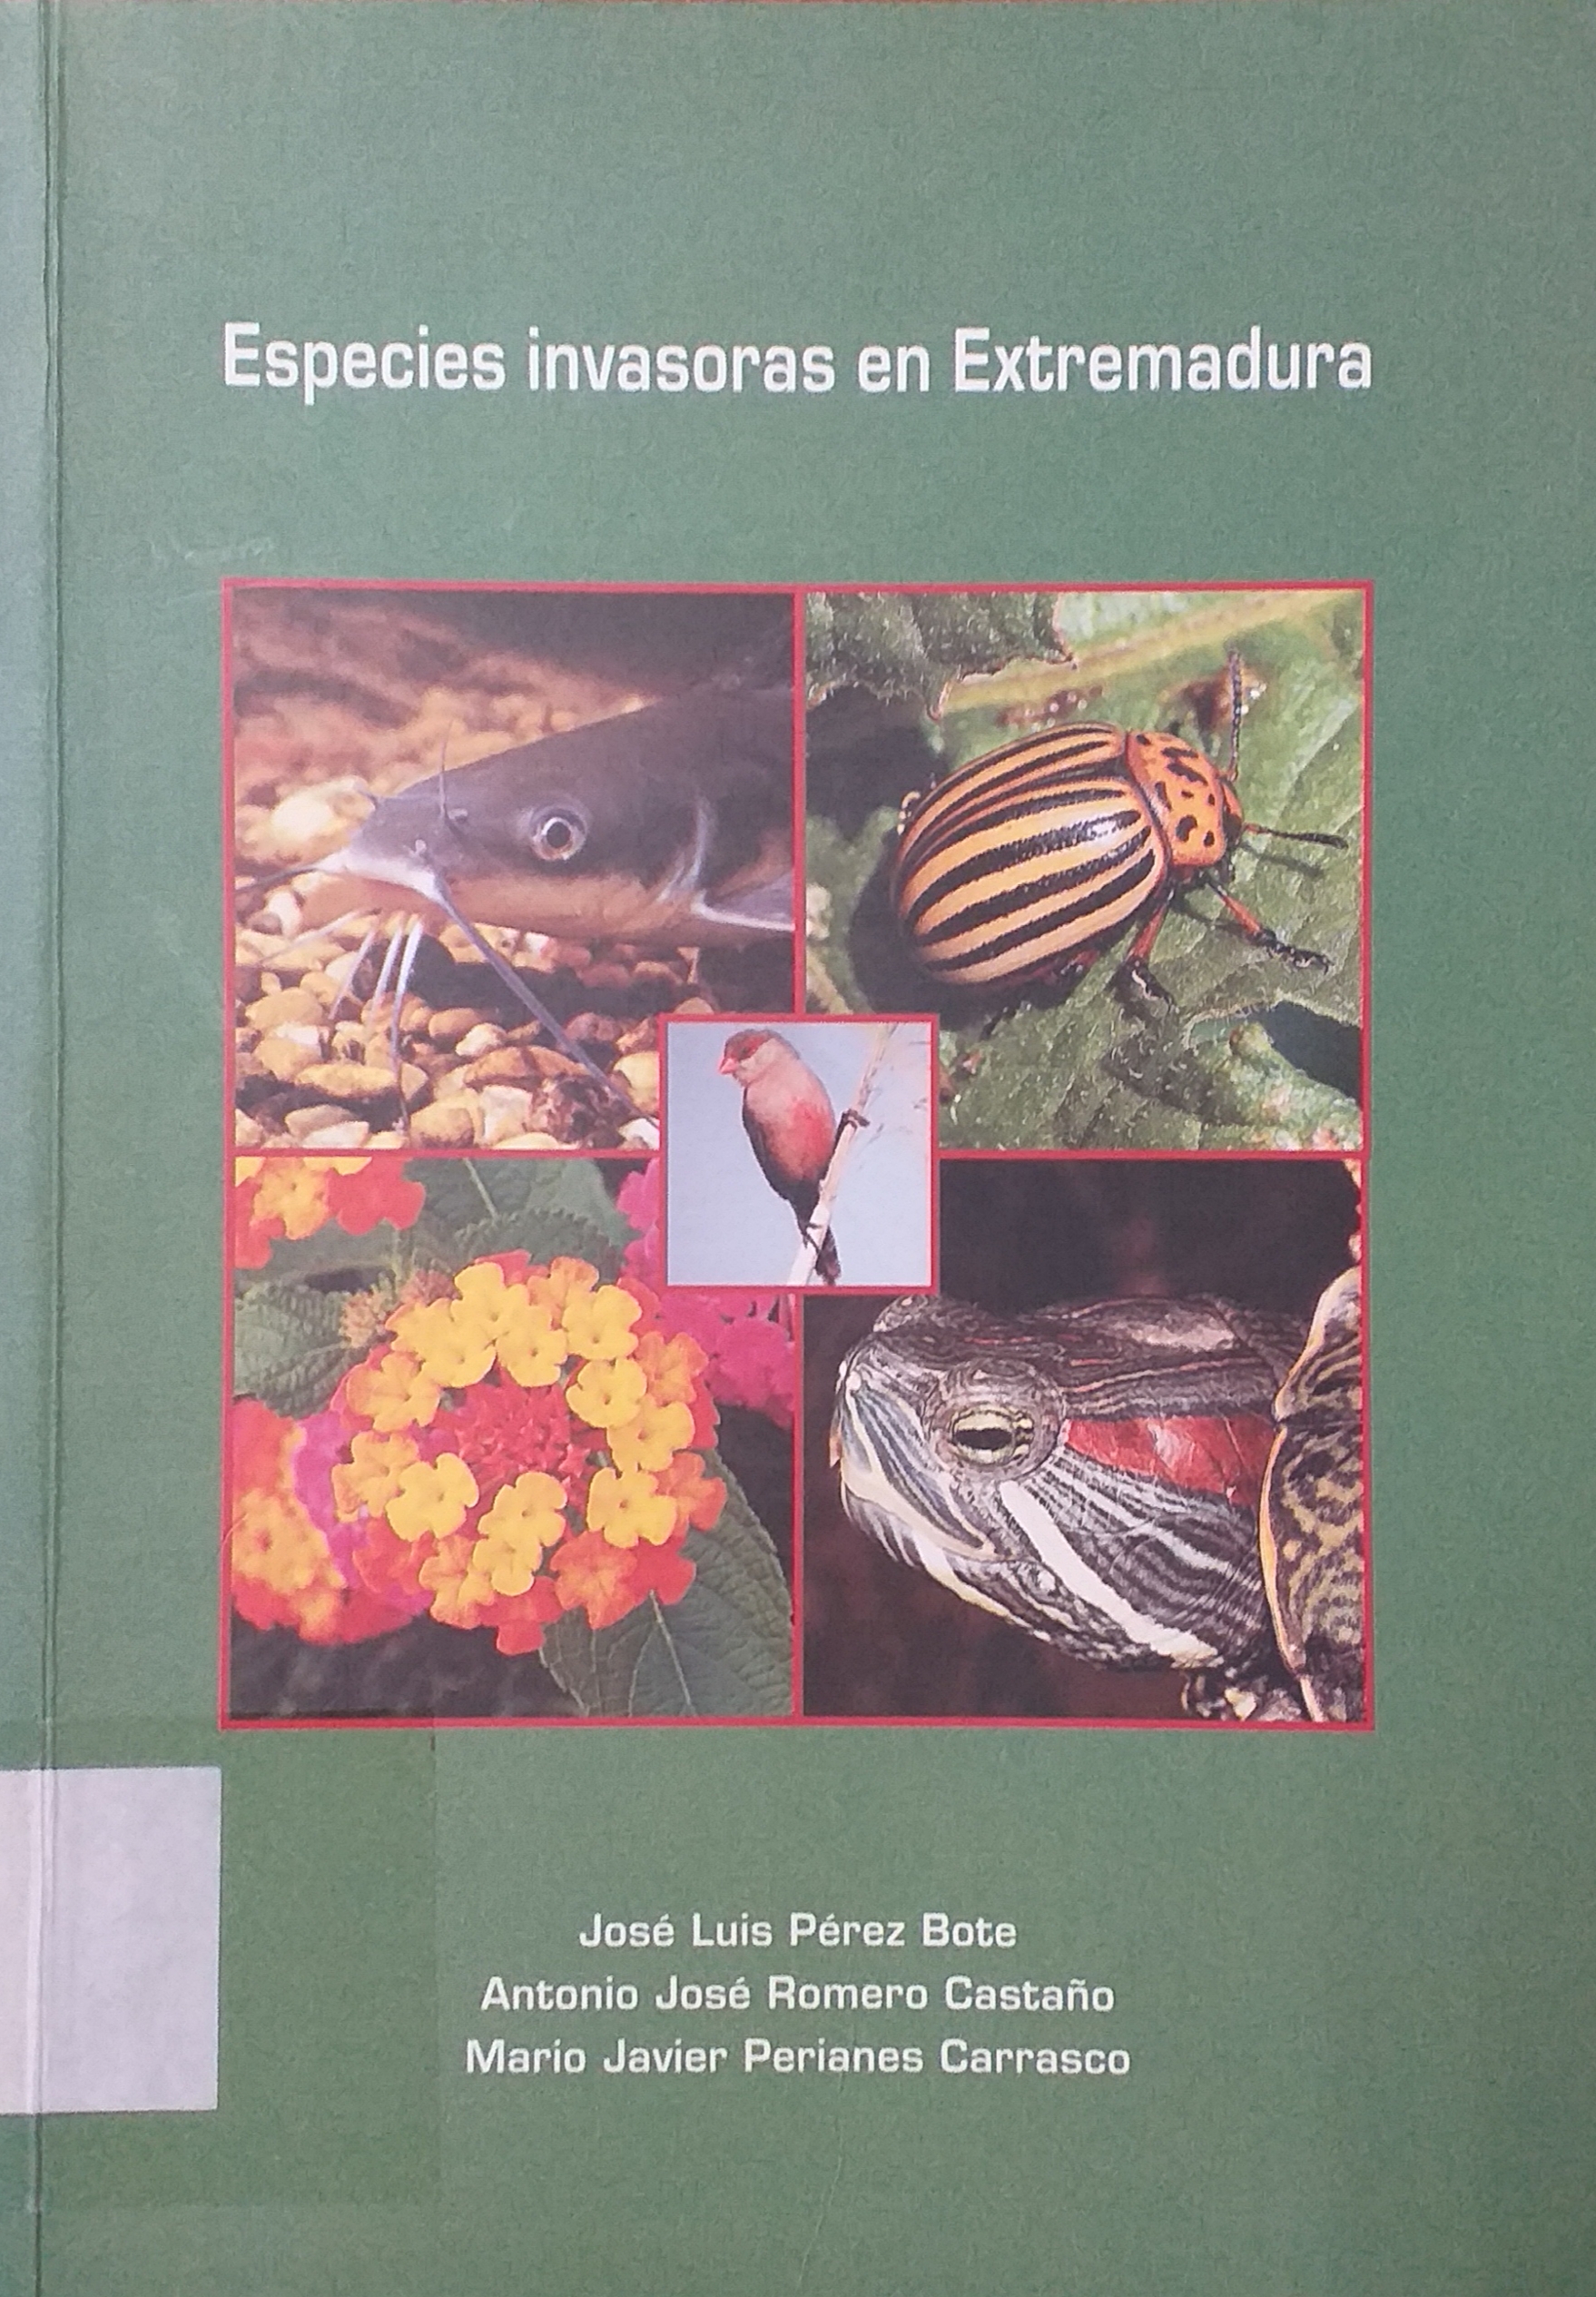 Imagen de portada del libro Especies invasoras en Extremadura